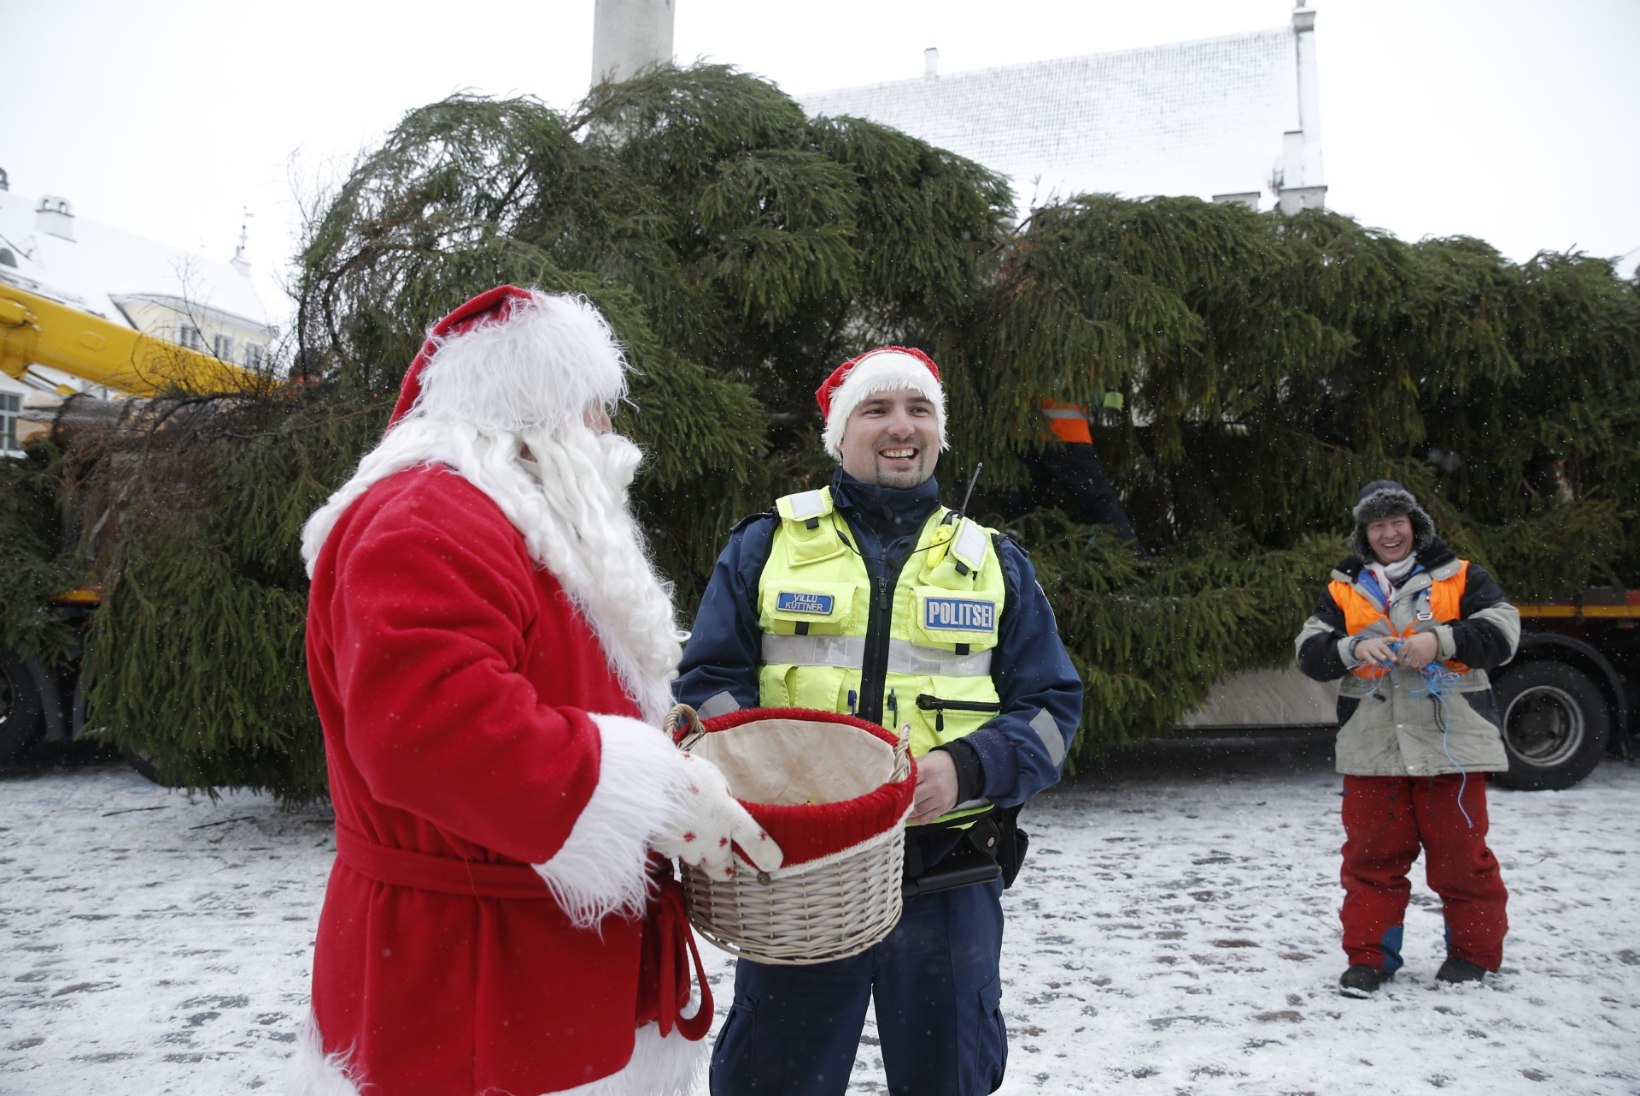 GALERII | JÕULUVANA JA POLITSEI: vaata, kuidas jõulukuusk jõudis Tallinnasse